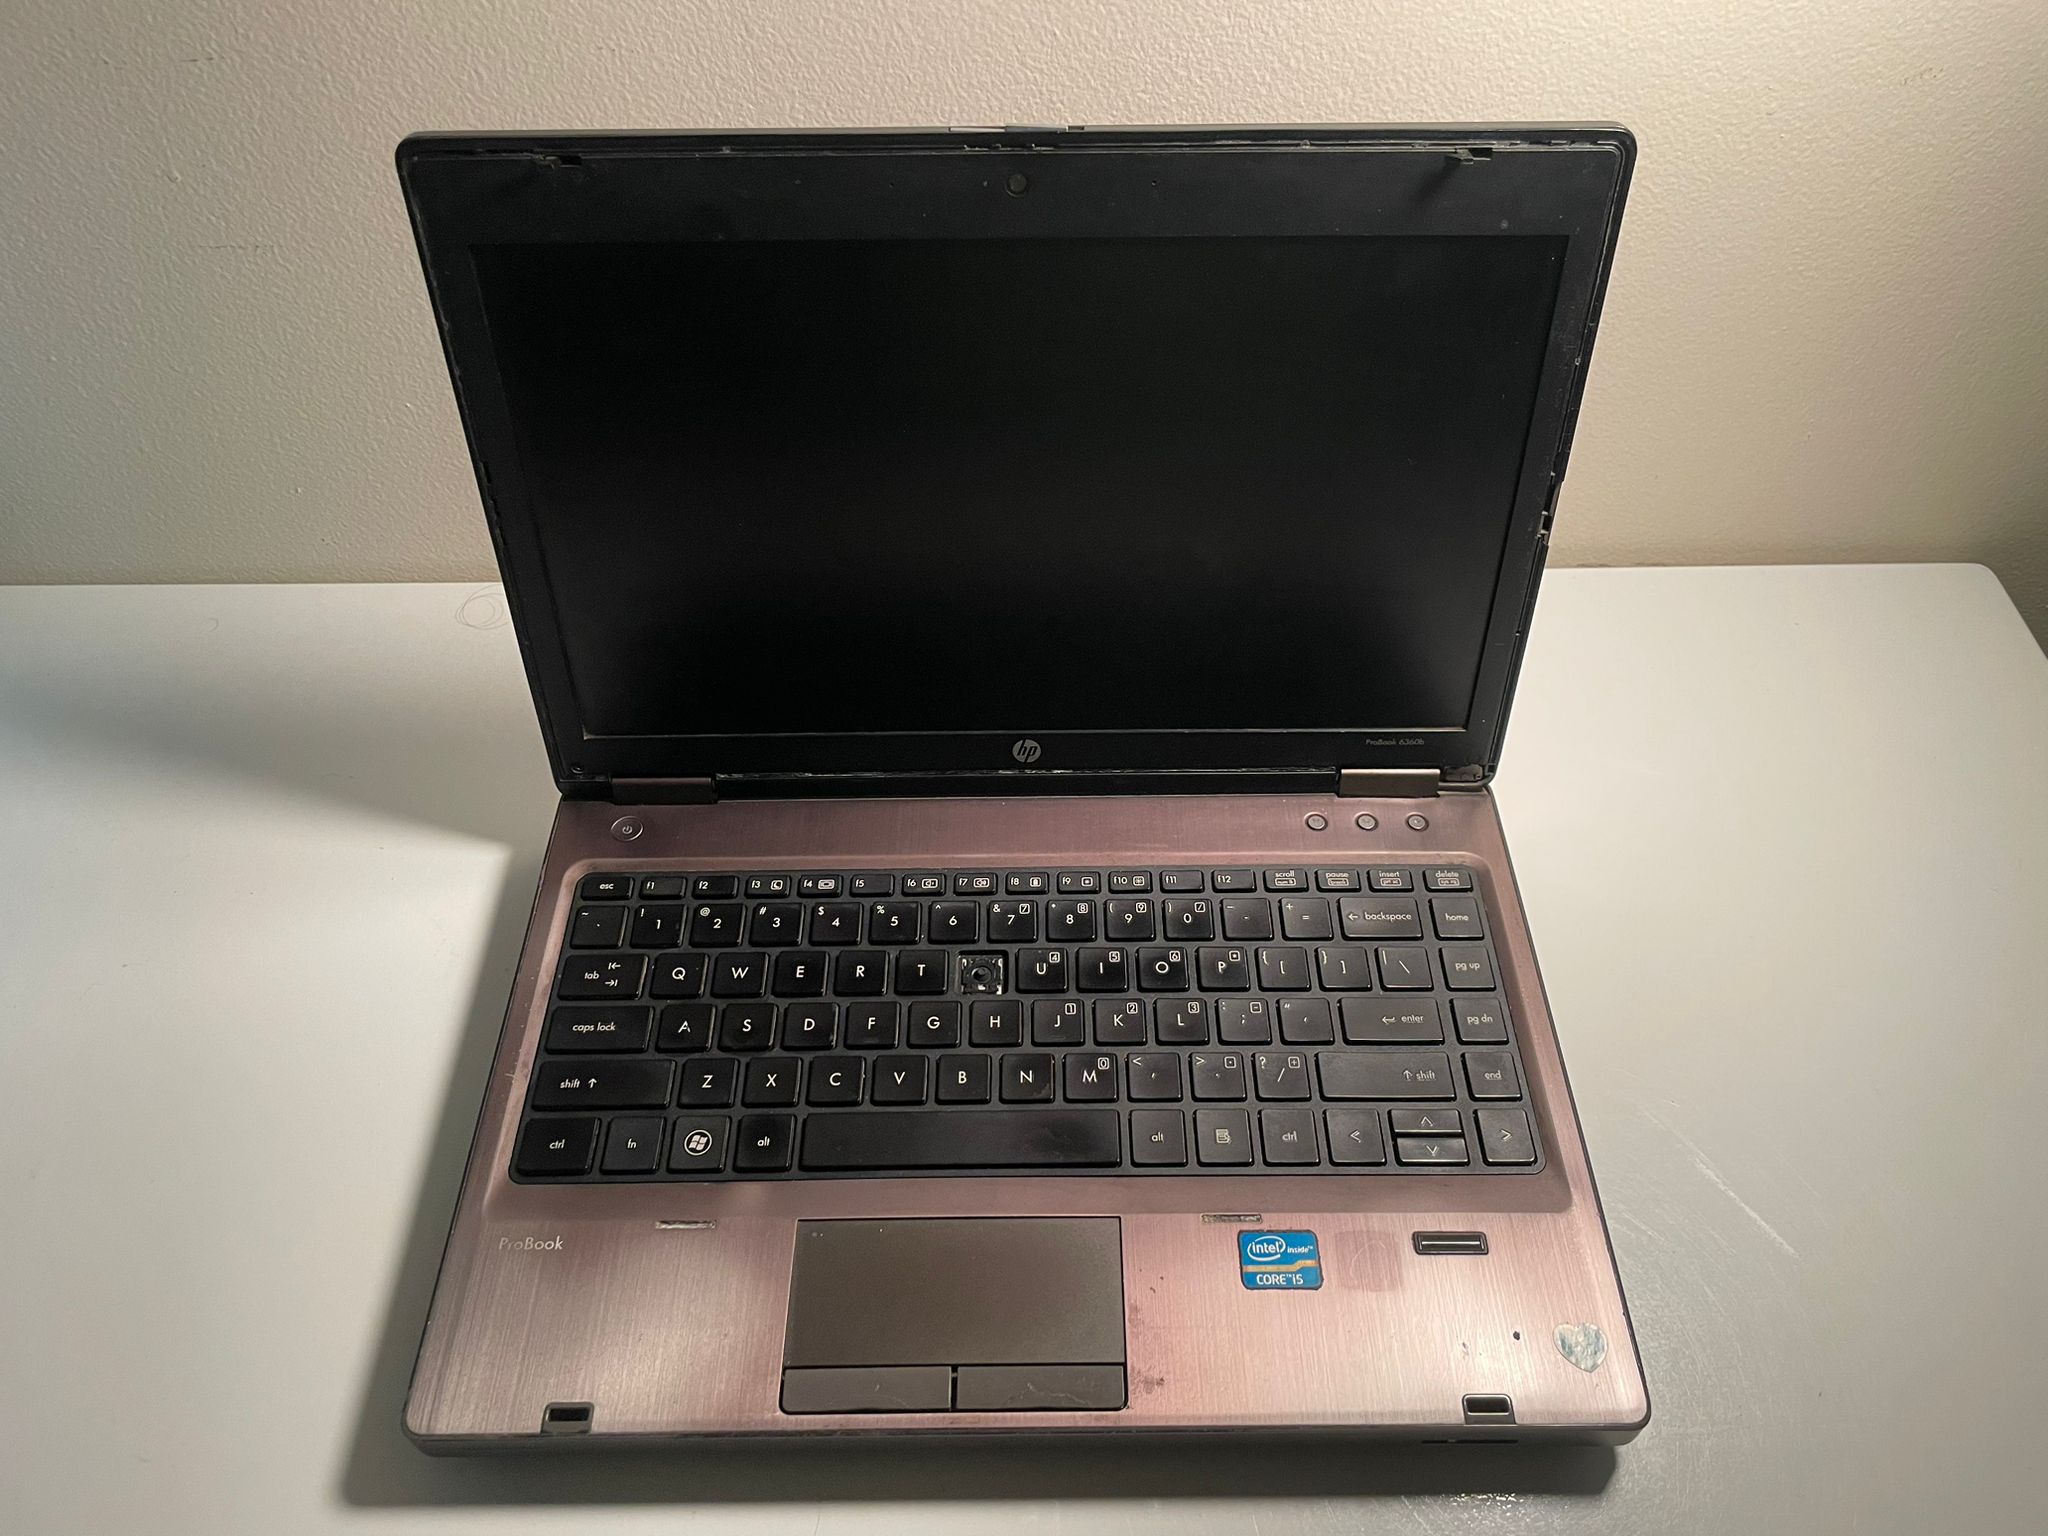 Probook 360 HP Laptop